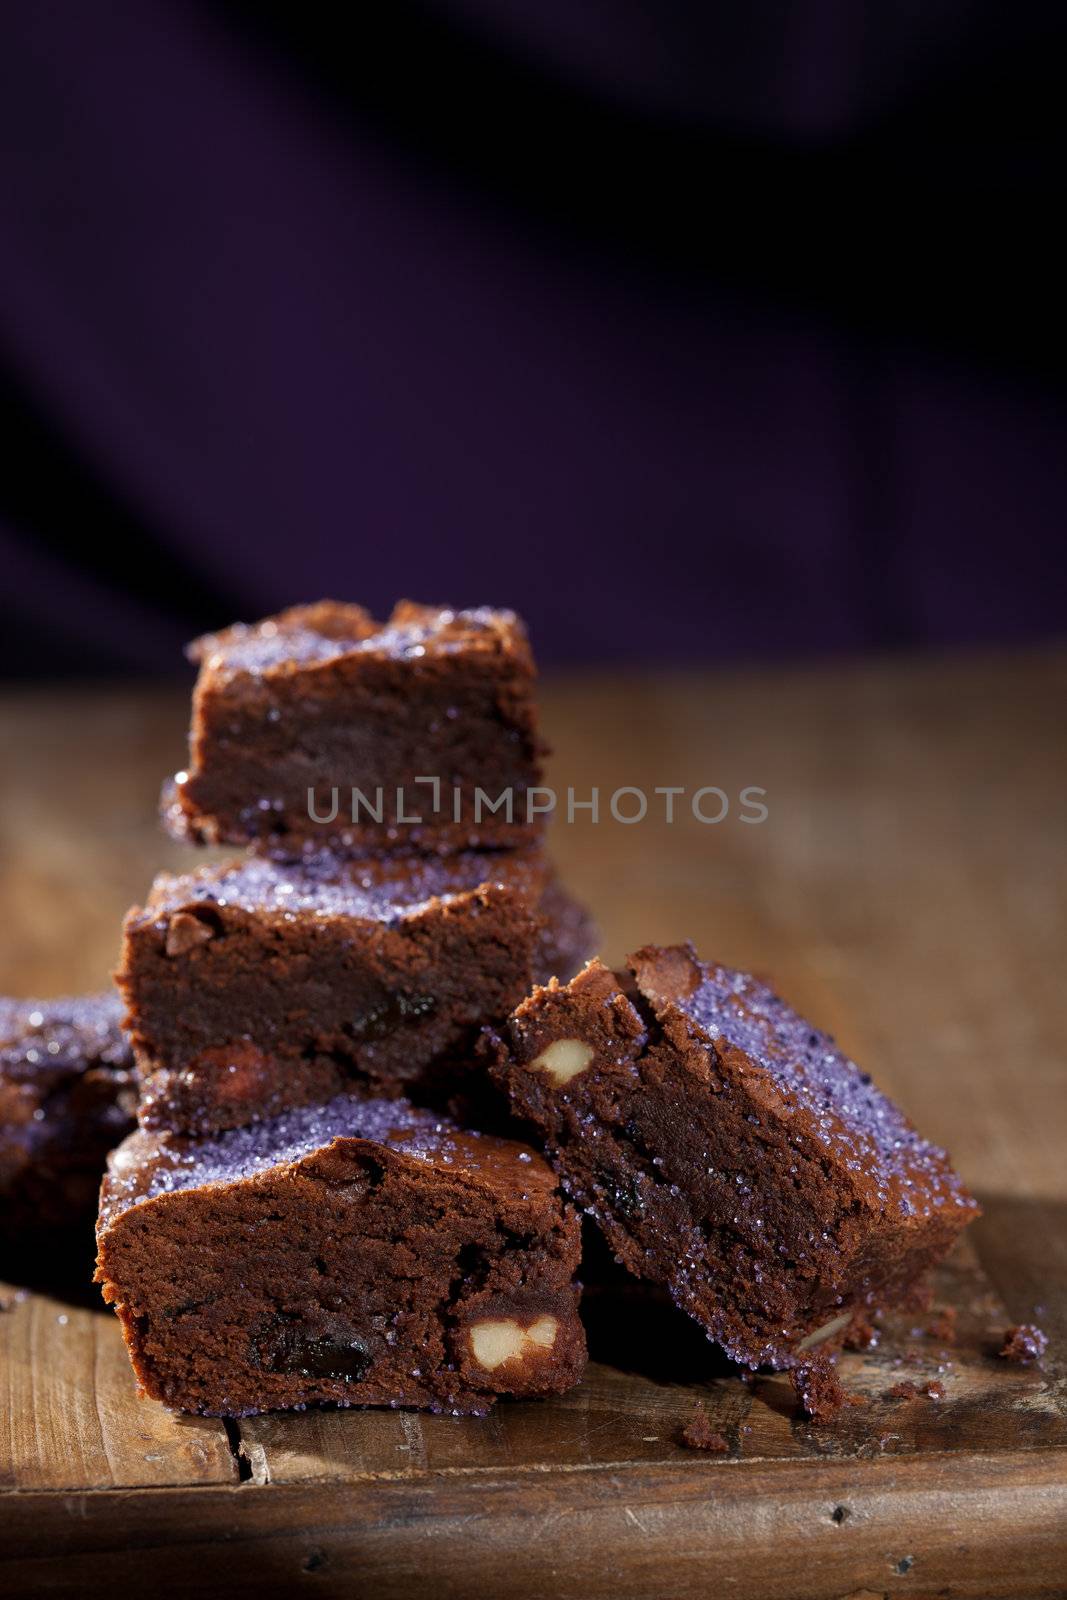 Lavender chocolate brownies by Fotosmurf